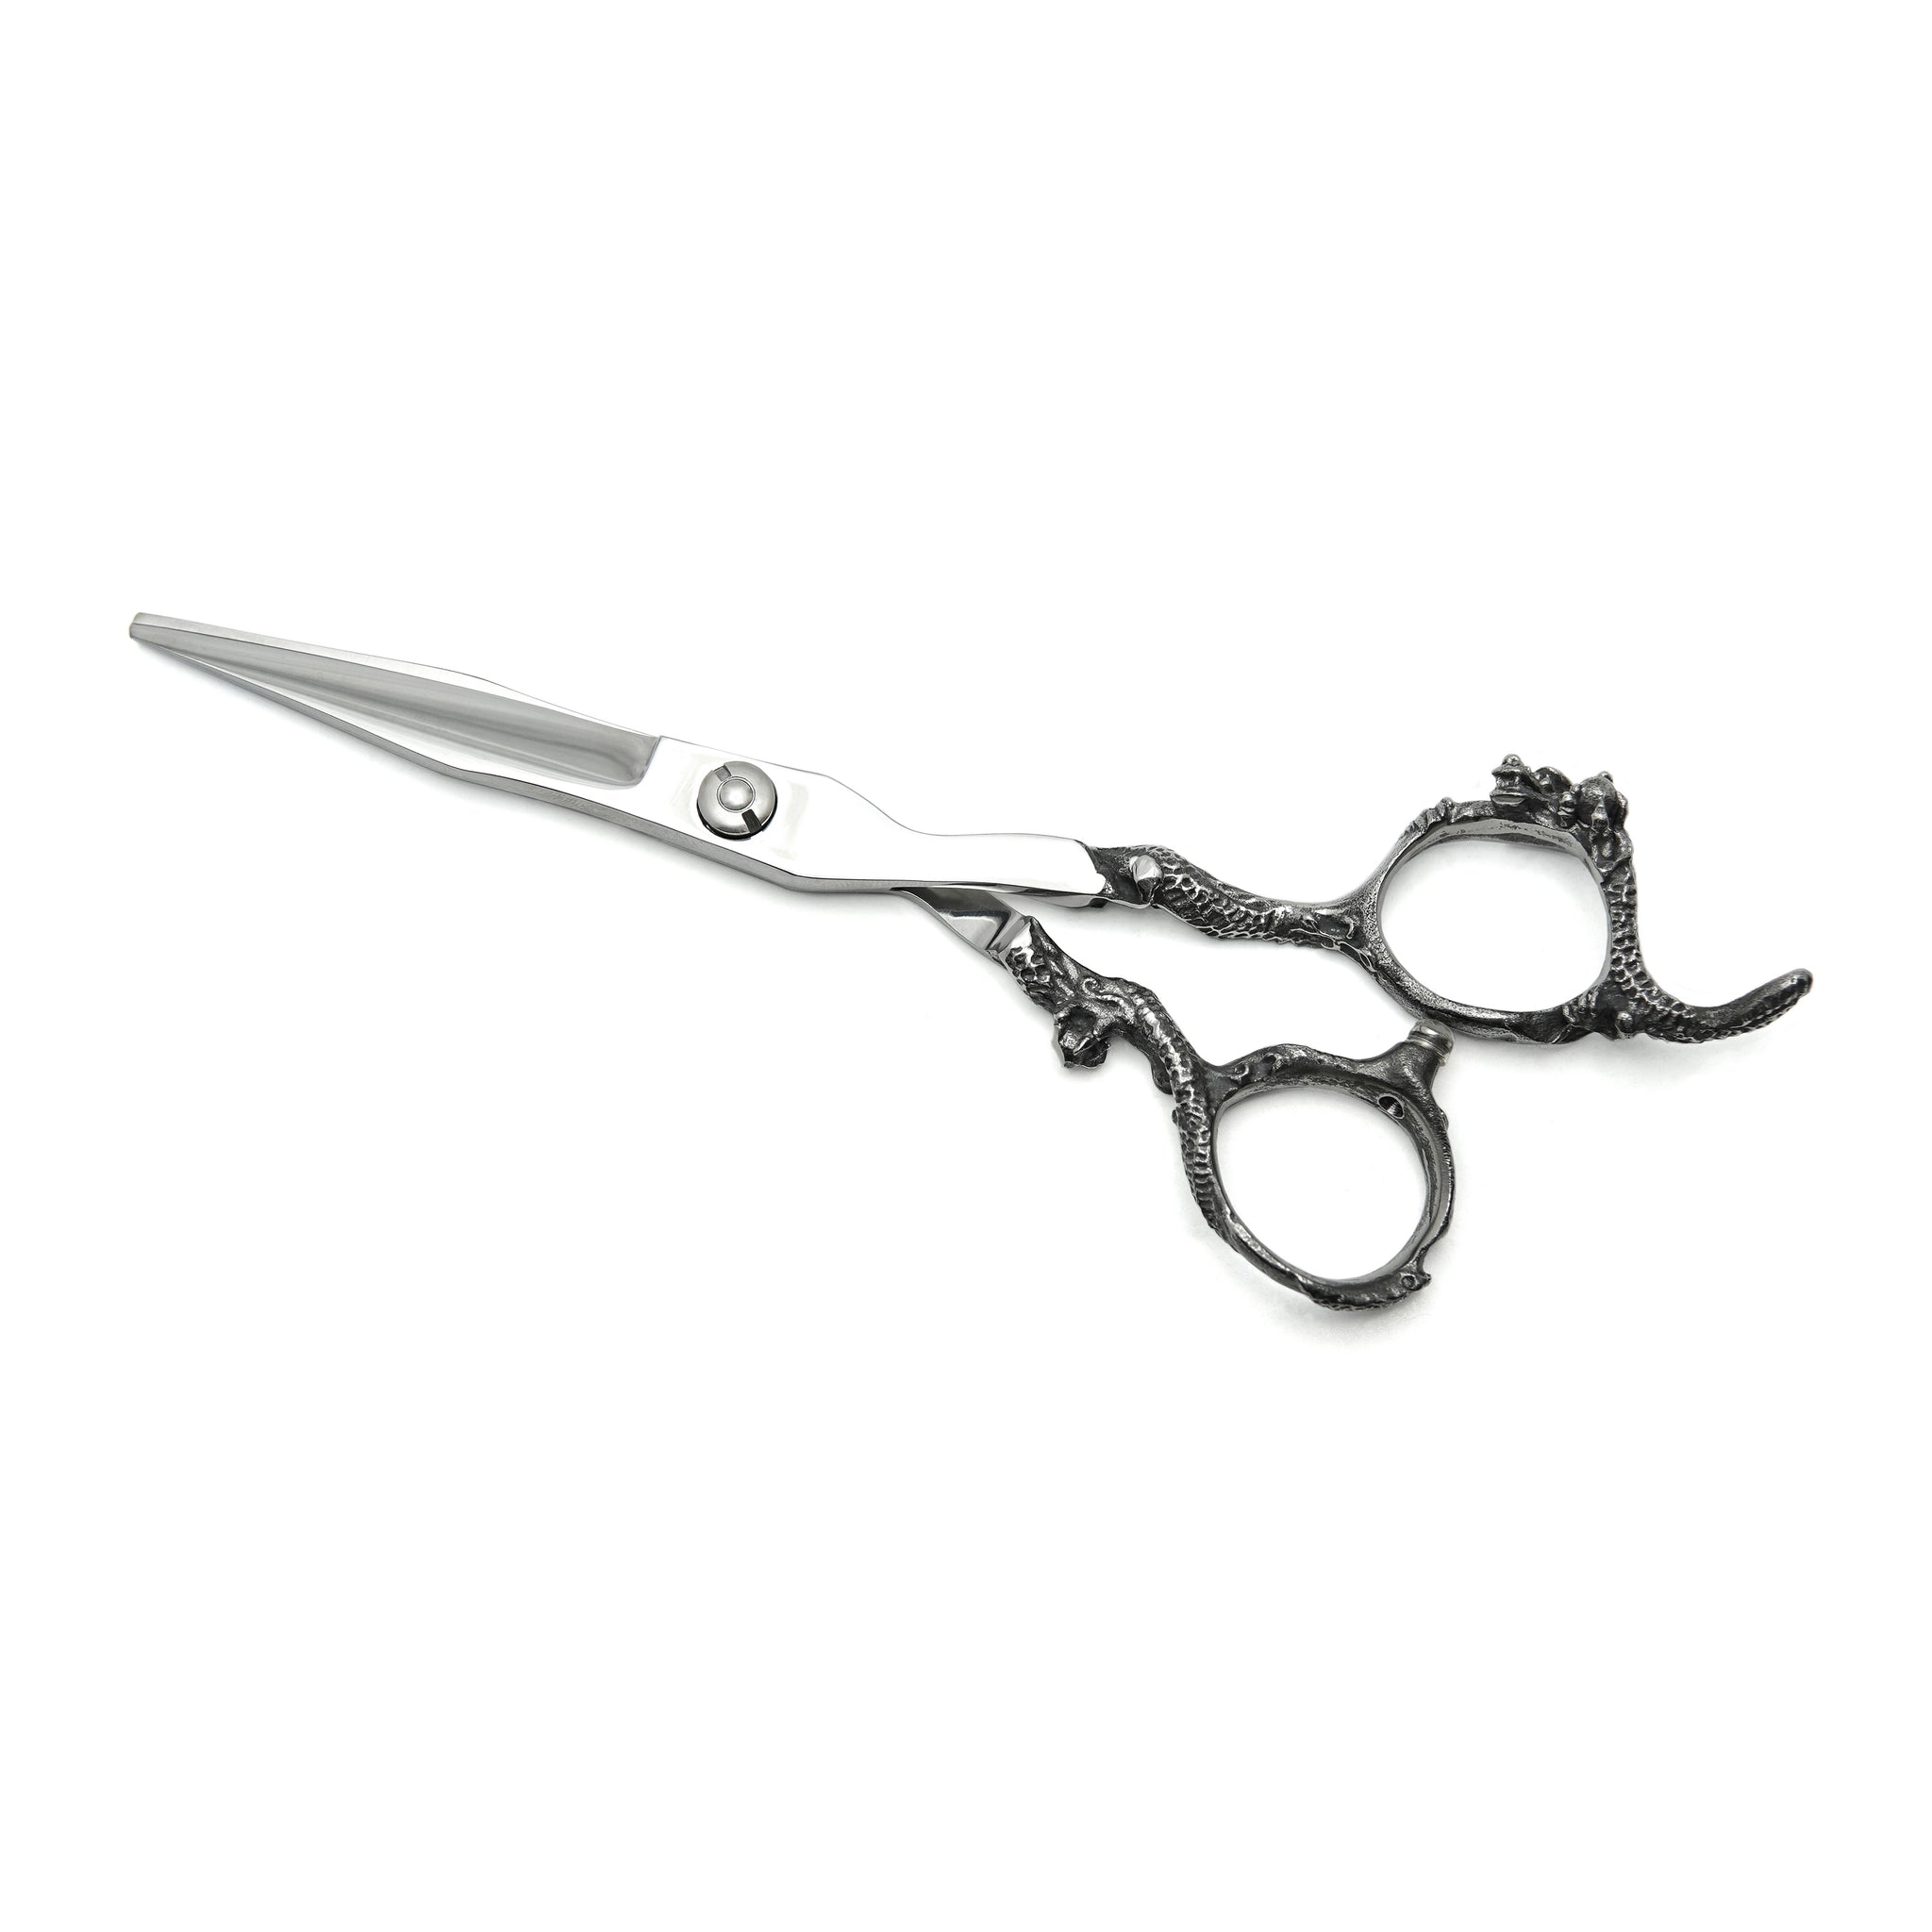 Ciseaux Dragon : Outil de coupe de cheveux professionnel pour salon de coiffure MI-003